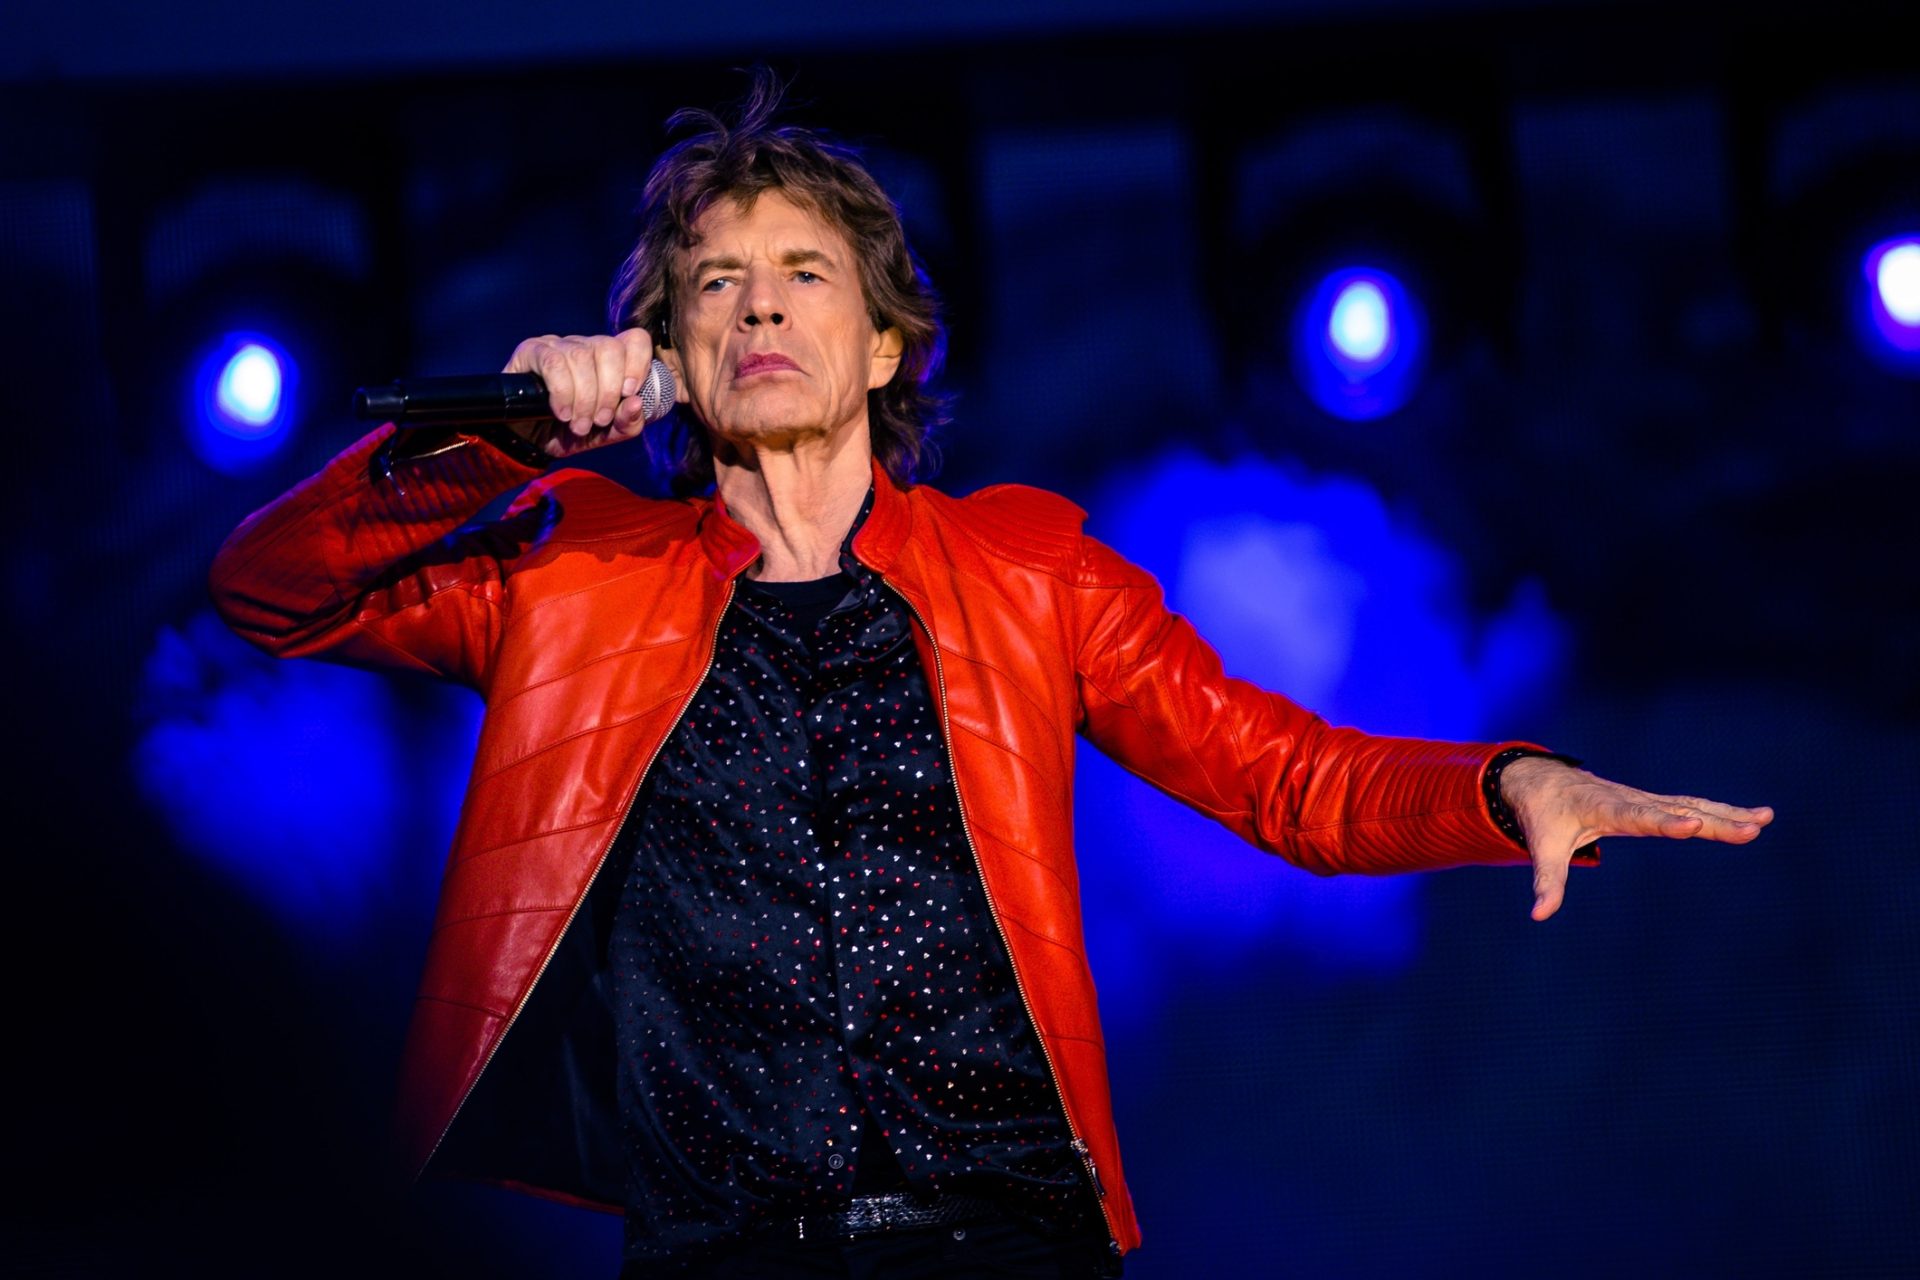 Os Rolling Stones vão lançar discos até &#8220;caírem para o lado&#8221;